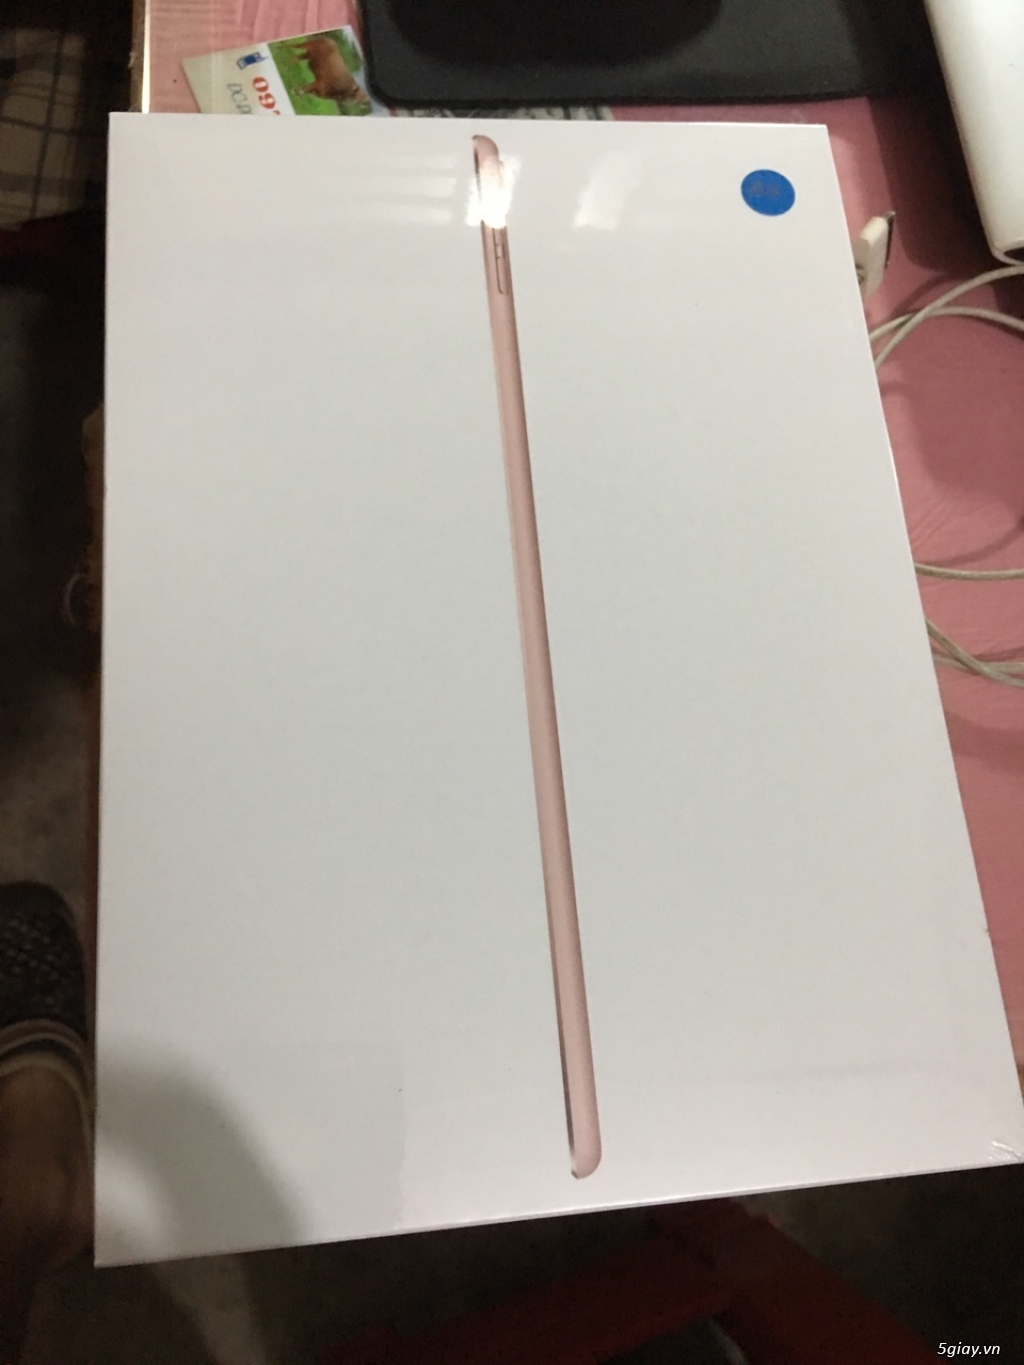 Cần bán Ipad Pro 9.7inch,4G, màu hồng, 129Gb, nguyên seal nguyên hộp chưa khui - 2